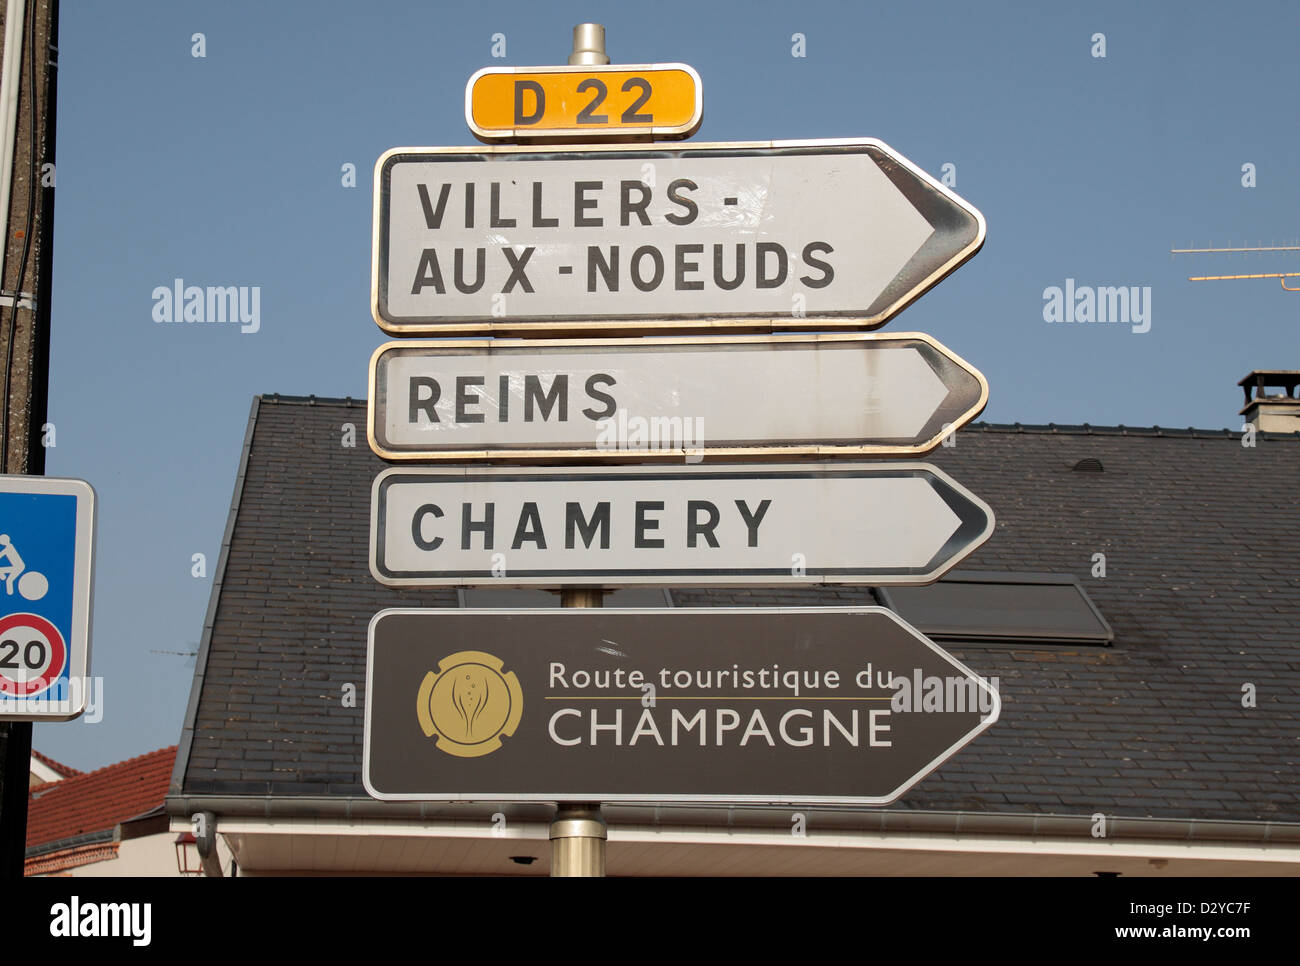 La signalisation routière générique y compris la route touristique de Champagne, signe de Sermiers, Champagne-Ardenne, France. Banque D'Images